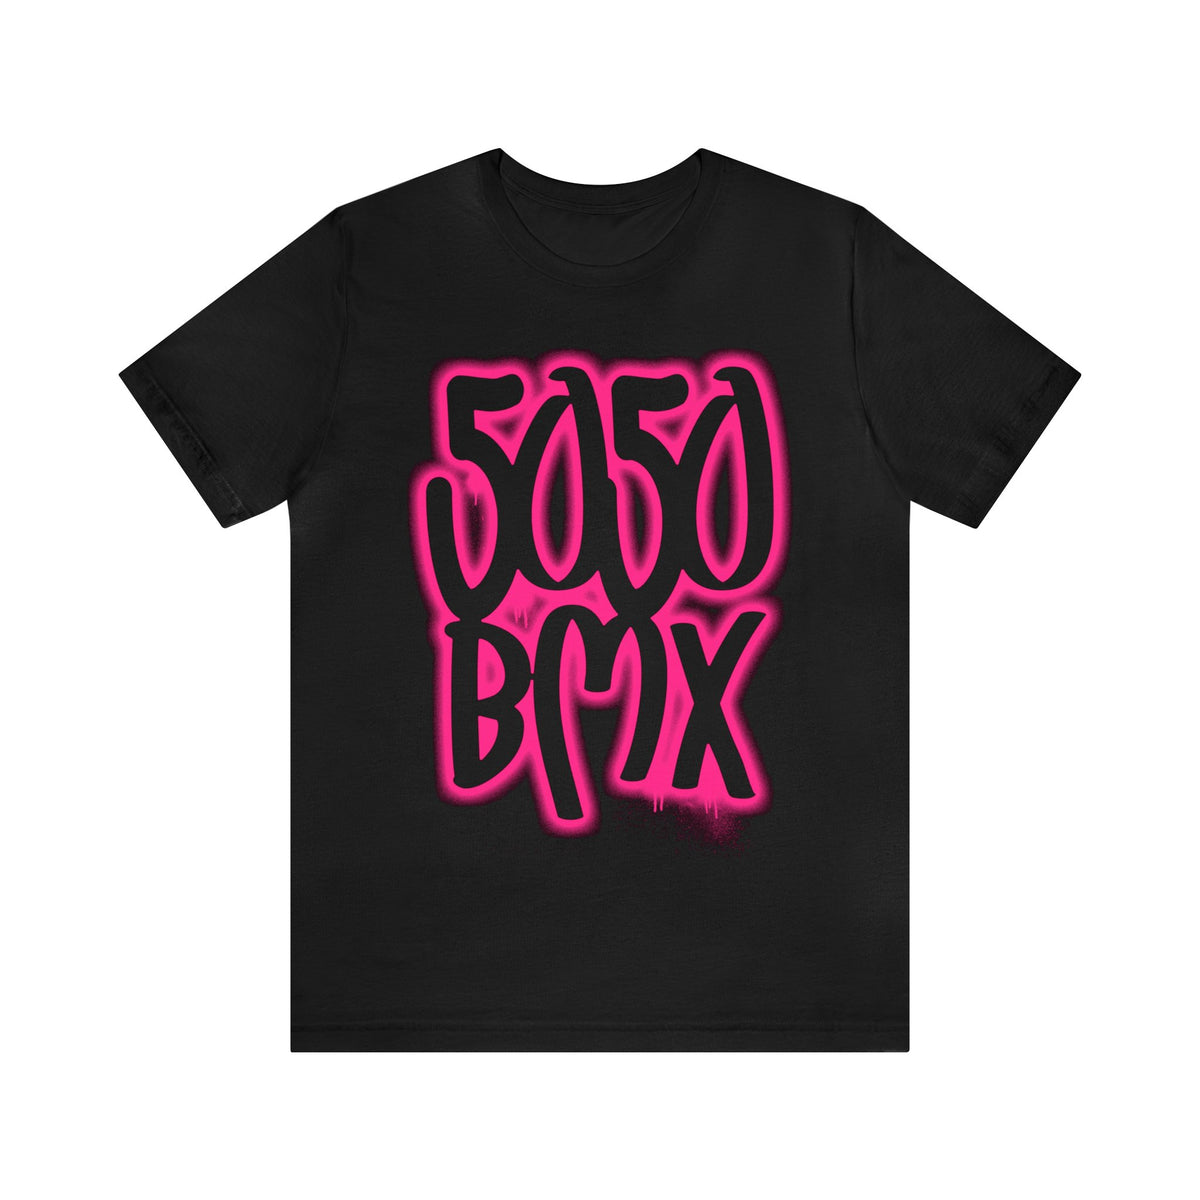 5050bmx Graffiti (Pink) - Short Sleeve Tee